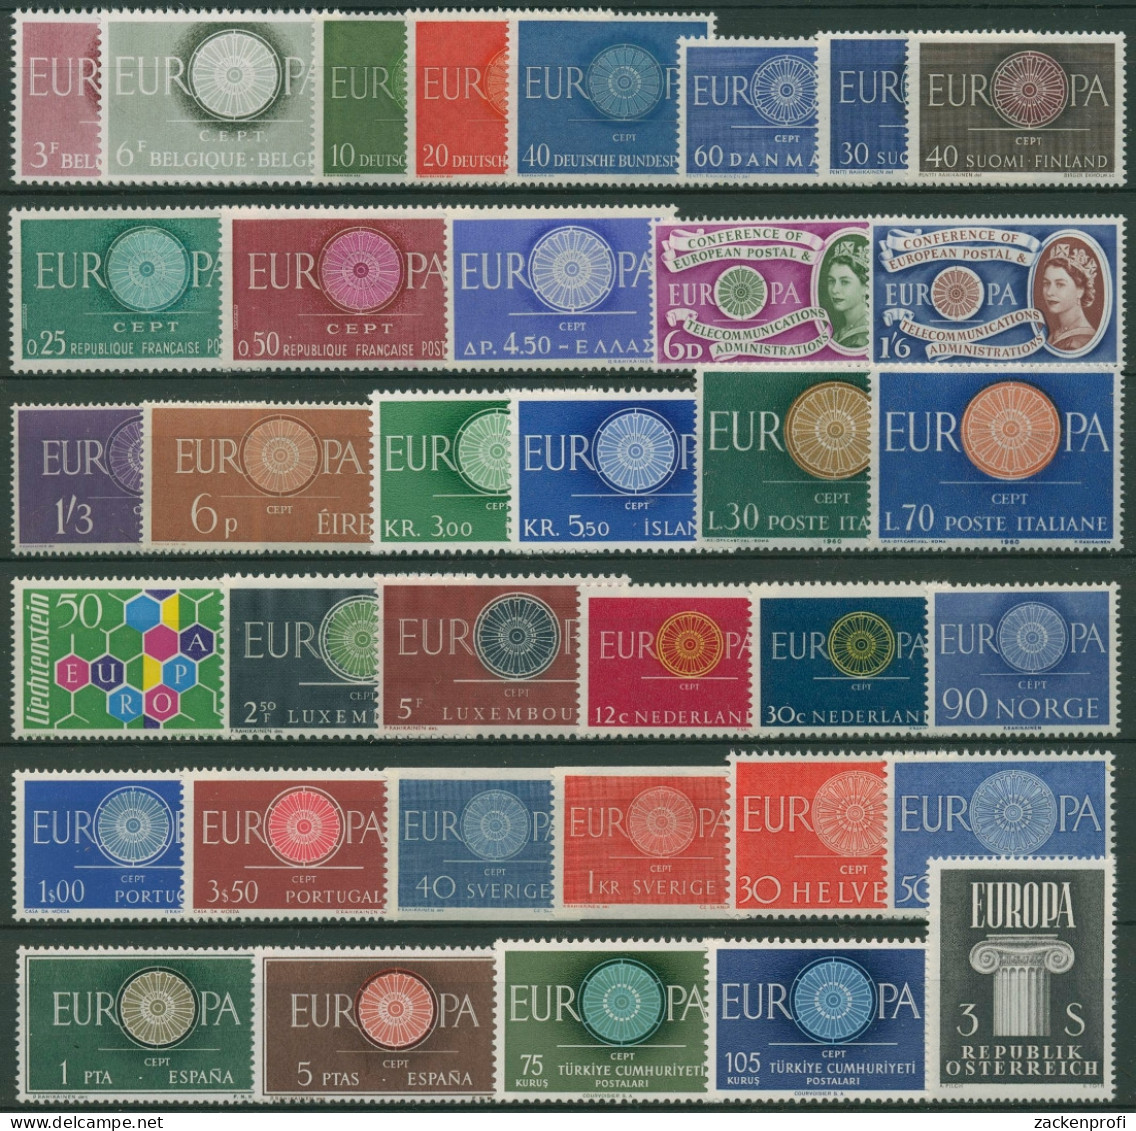 EUROPA CEPT Jahrgang 1960 Postfrisch Komplett (20 Länder) (SG97662) - Años Completos